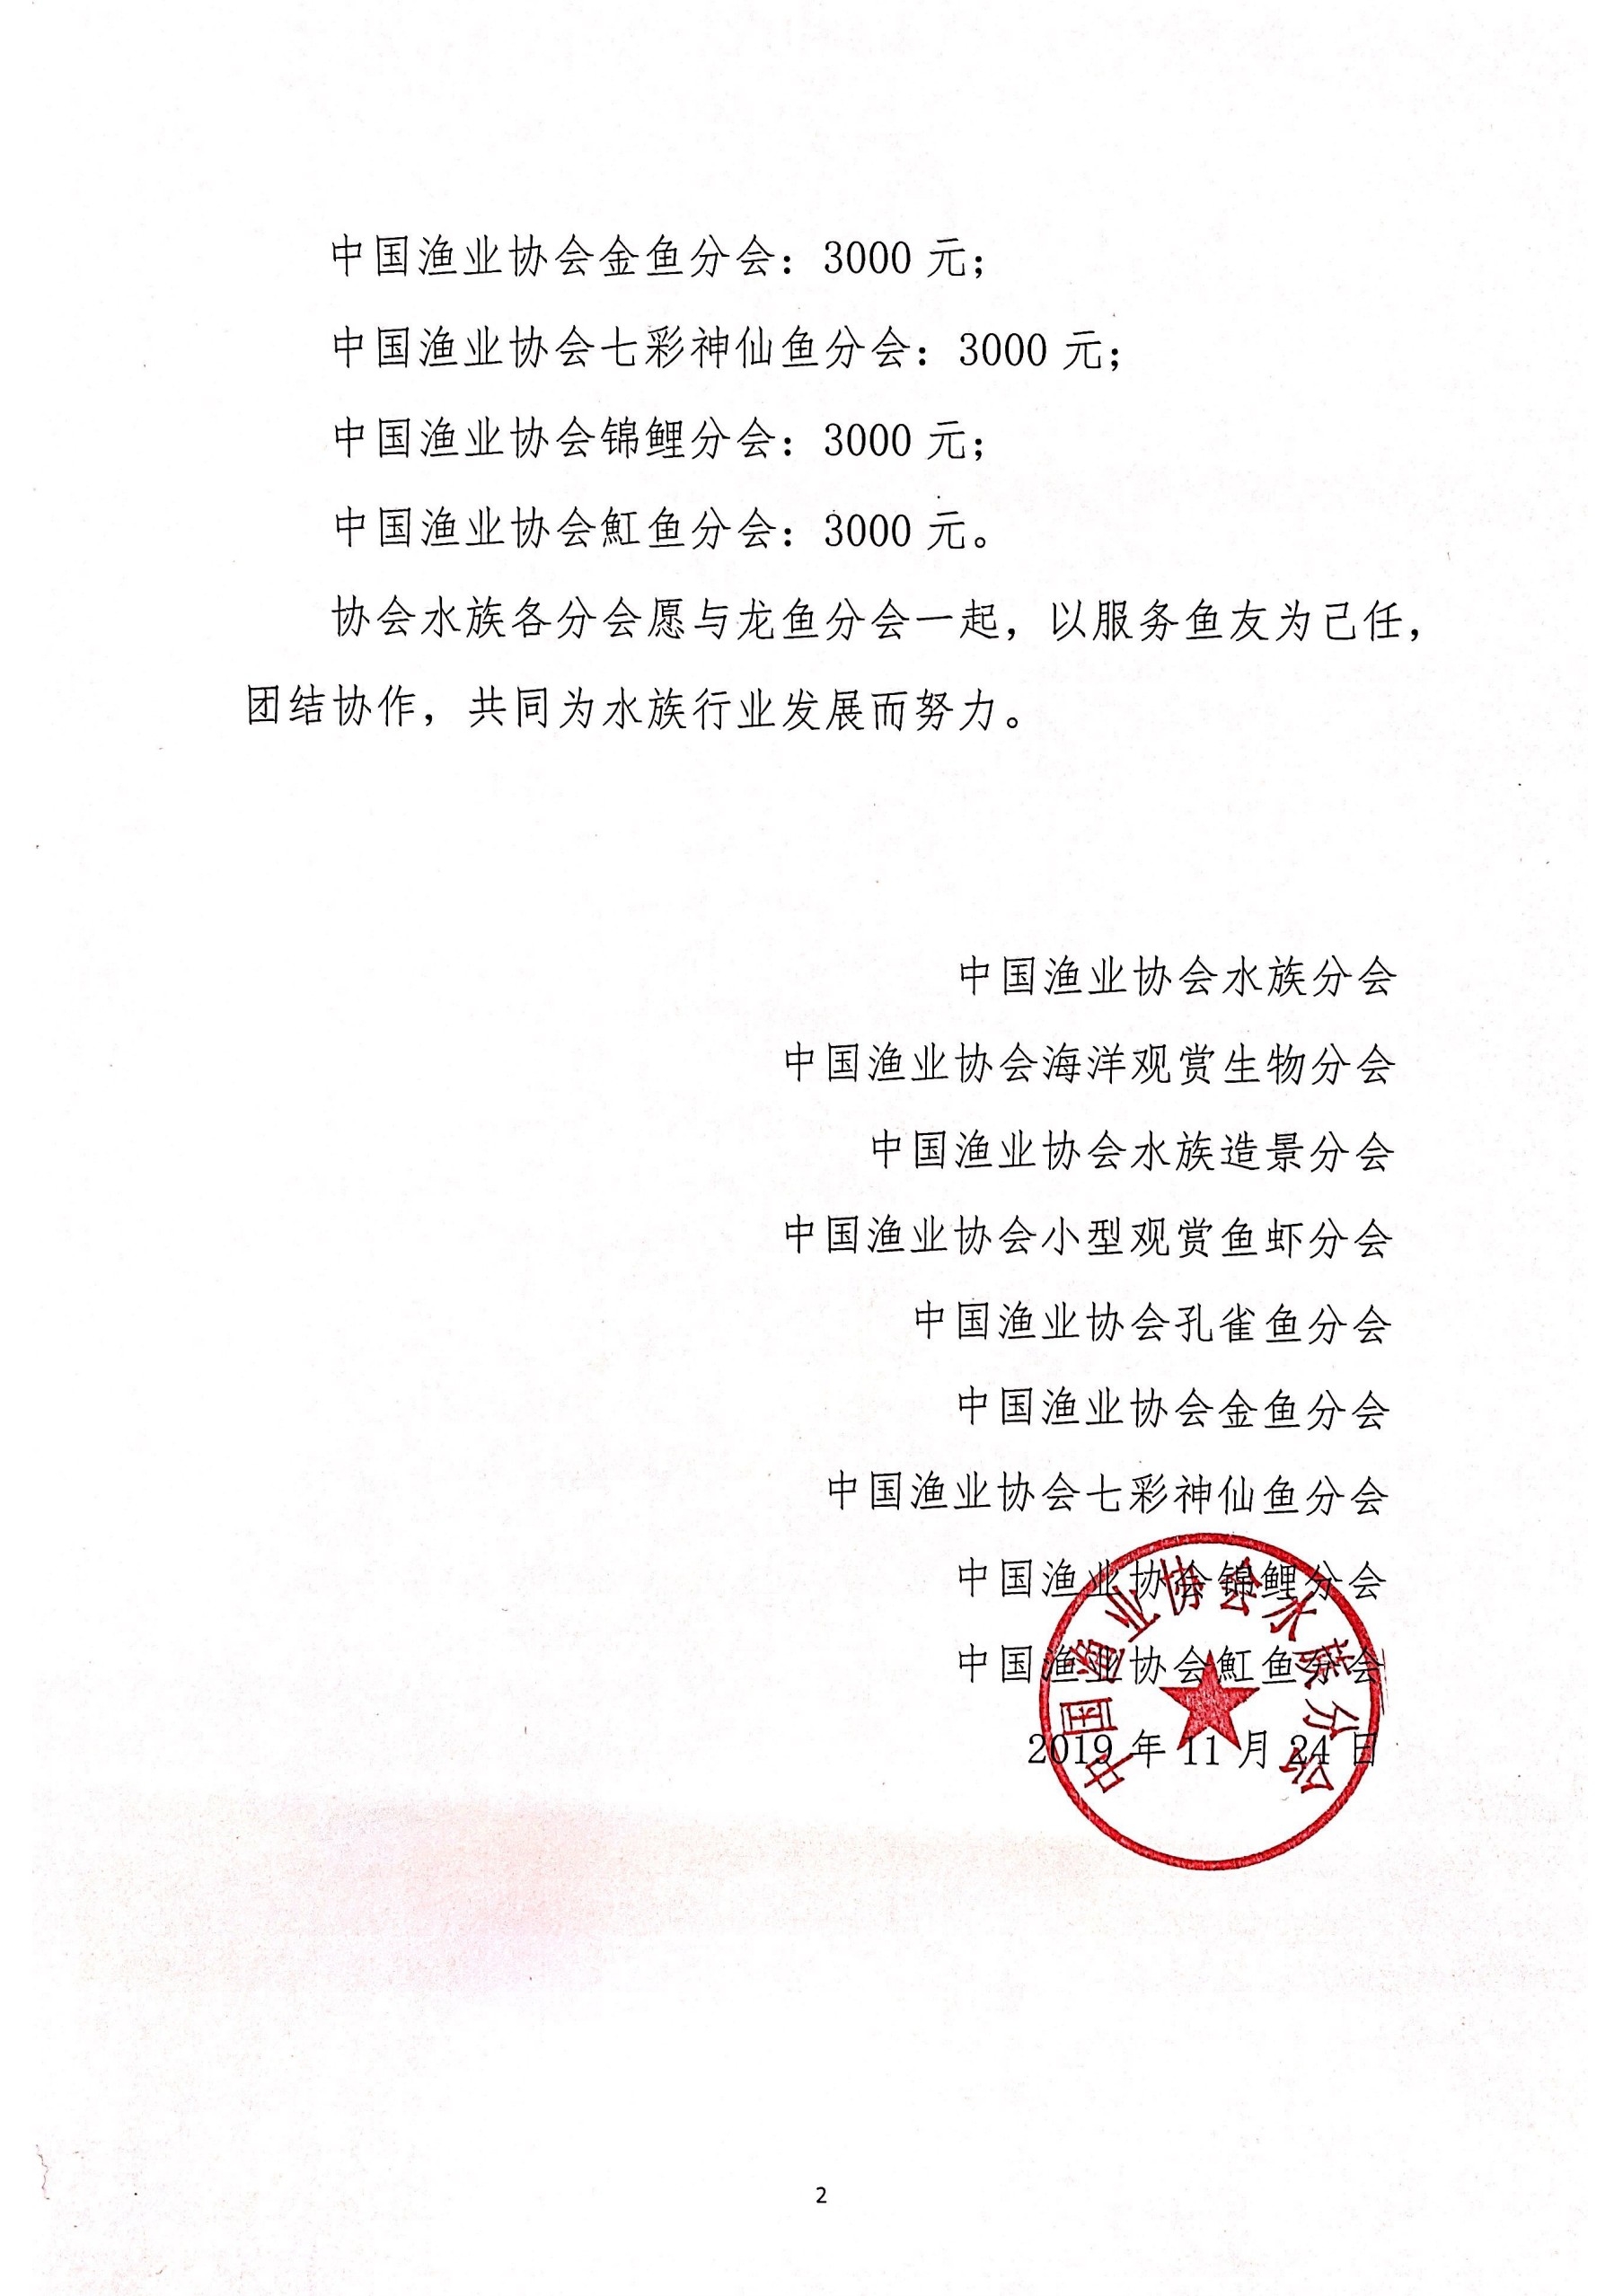 中国渔业协会关于2019长城杯龙鱼大赛死鱼事件的批复